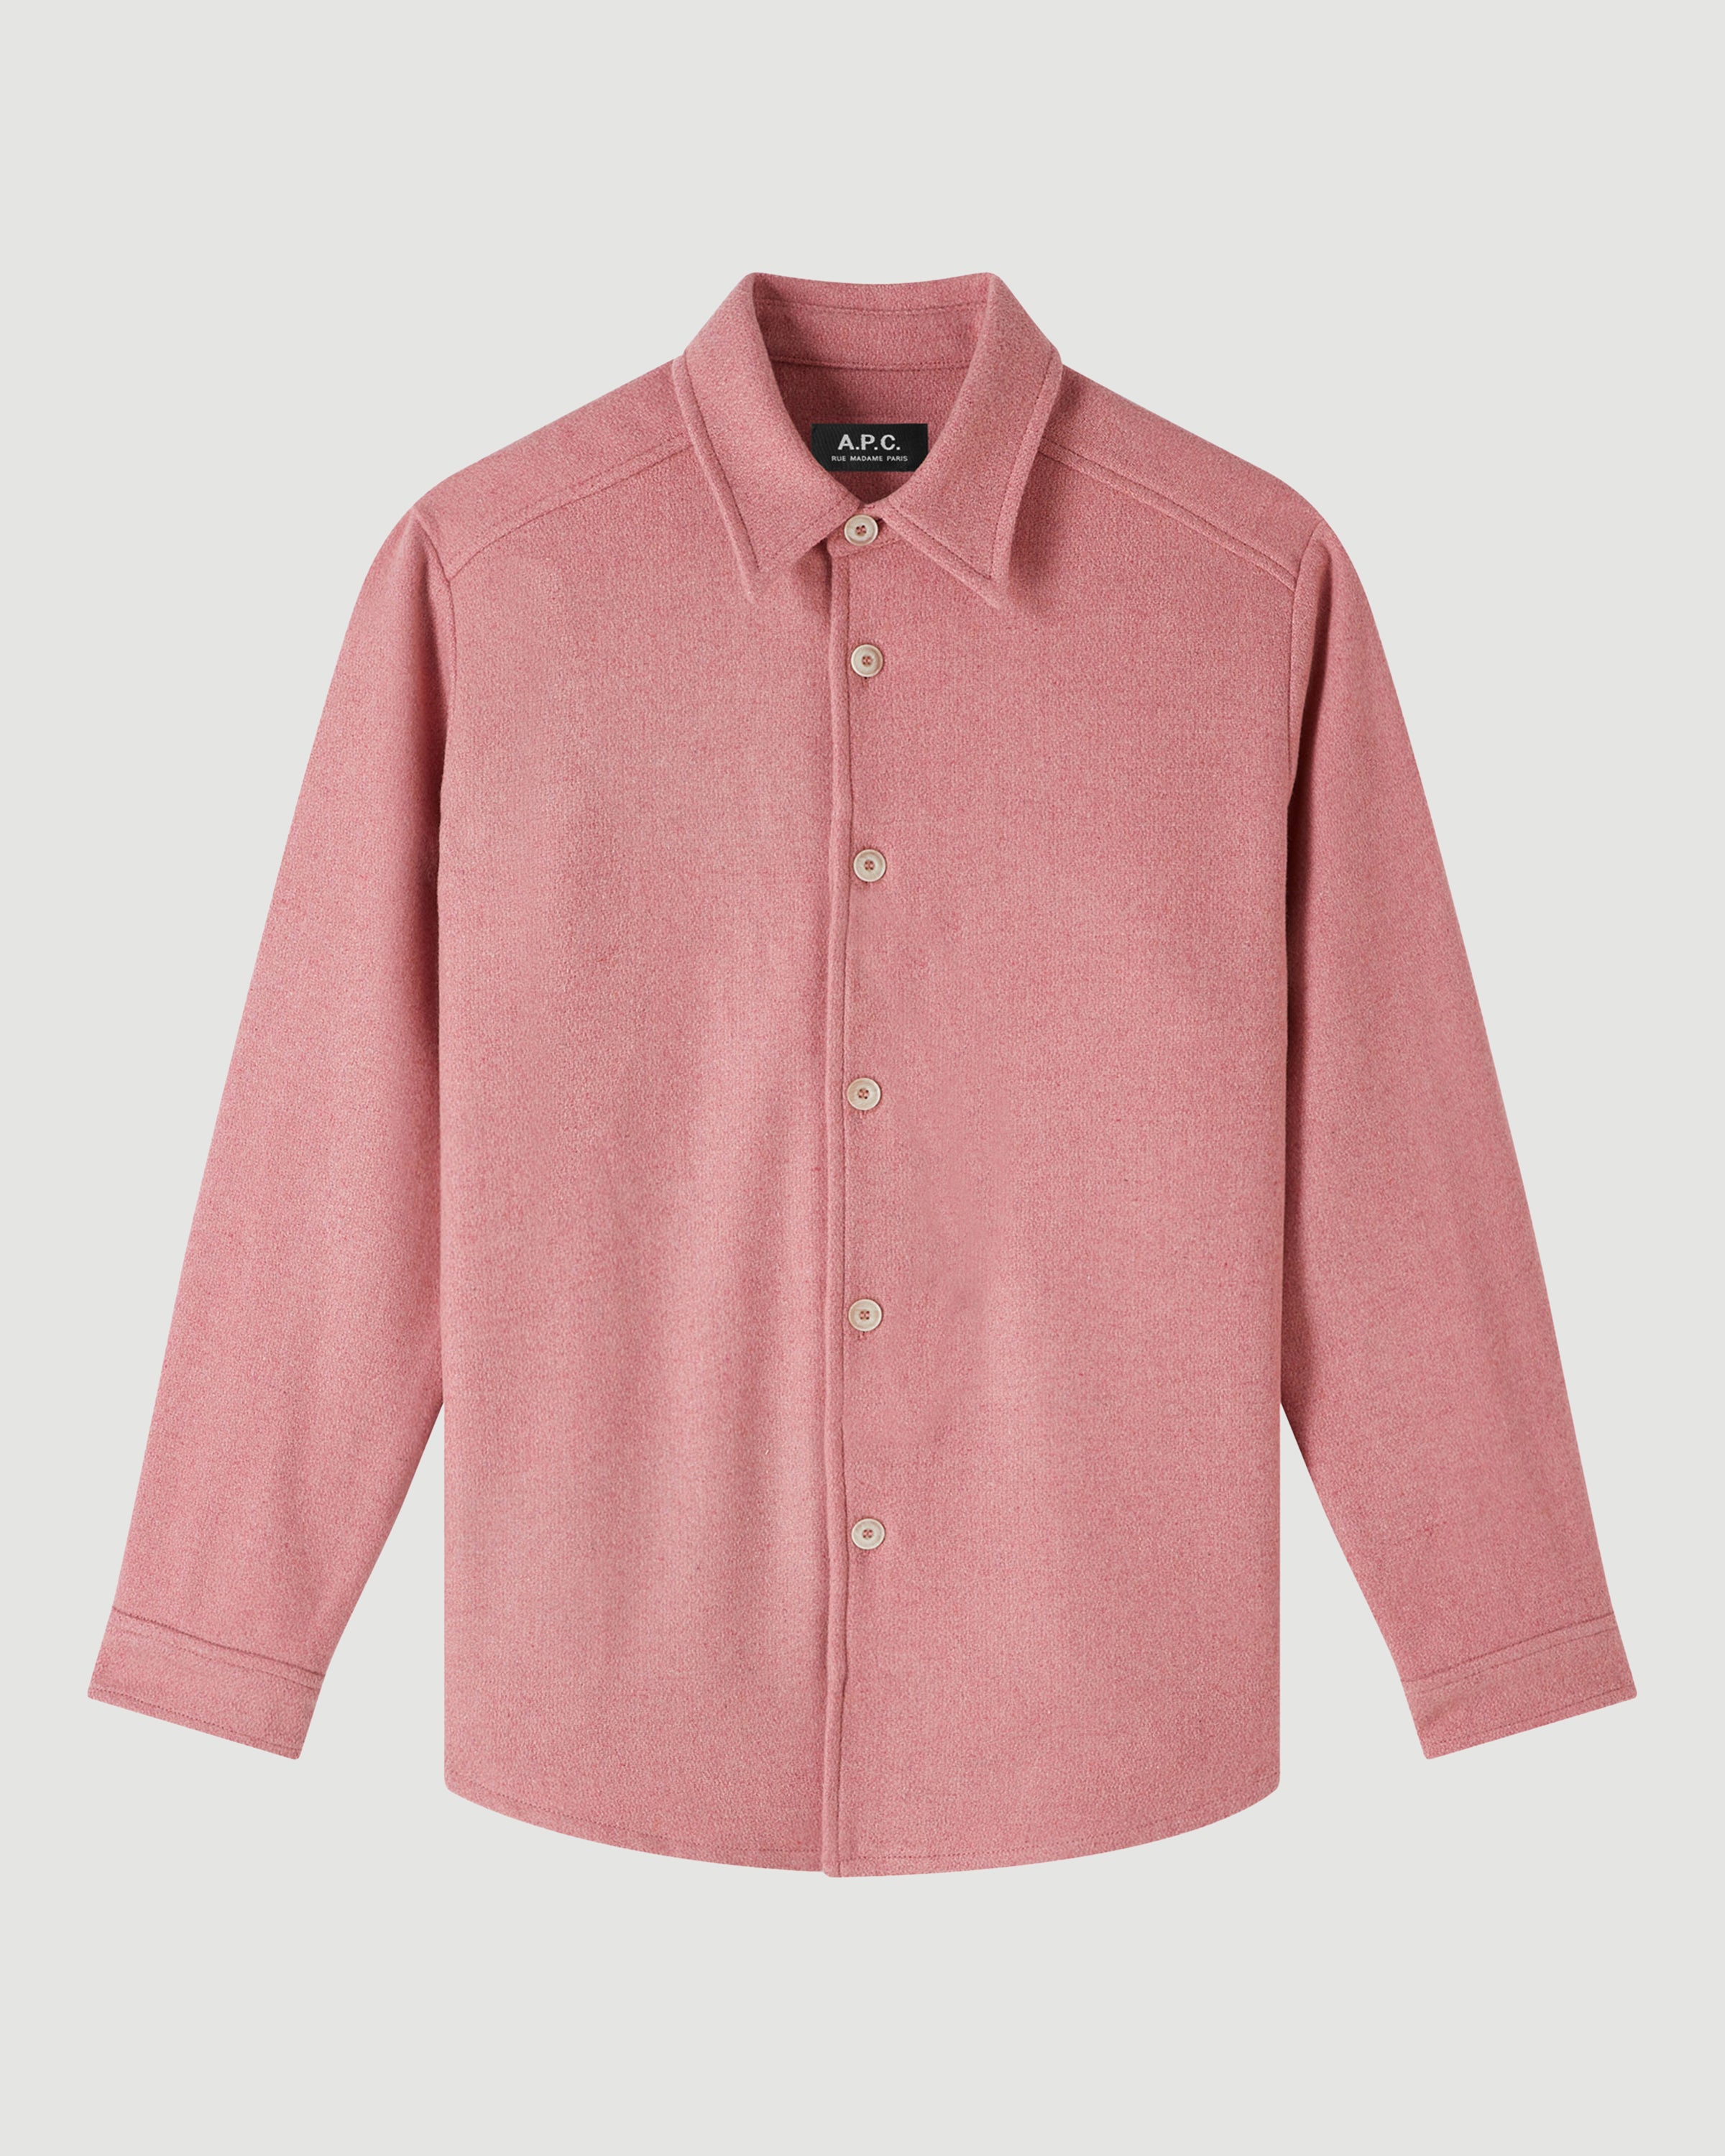 A.P.C. Surchemise Tilda Pink Shirt L/S Women